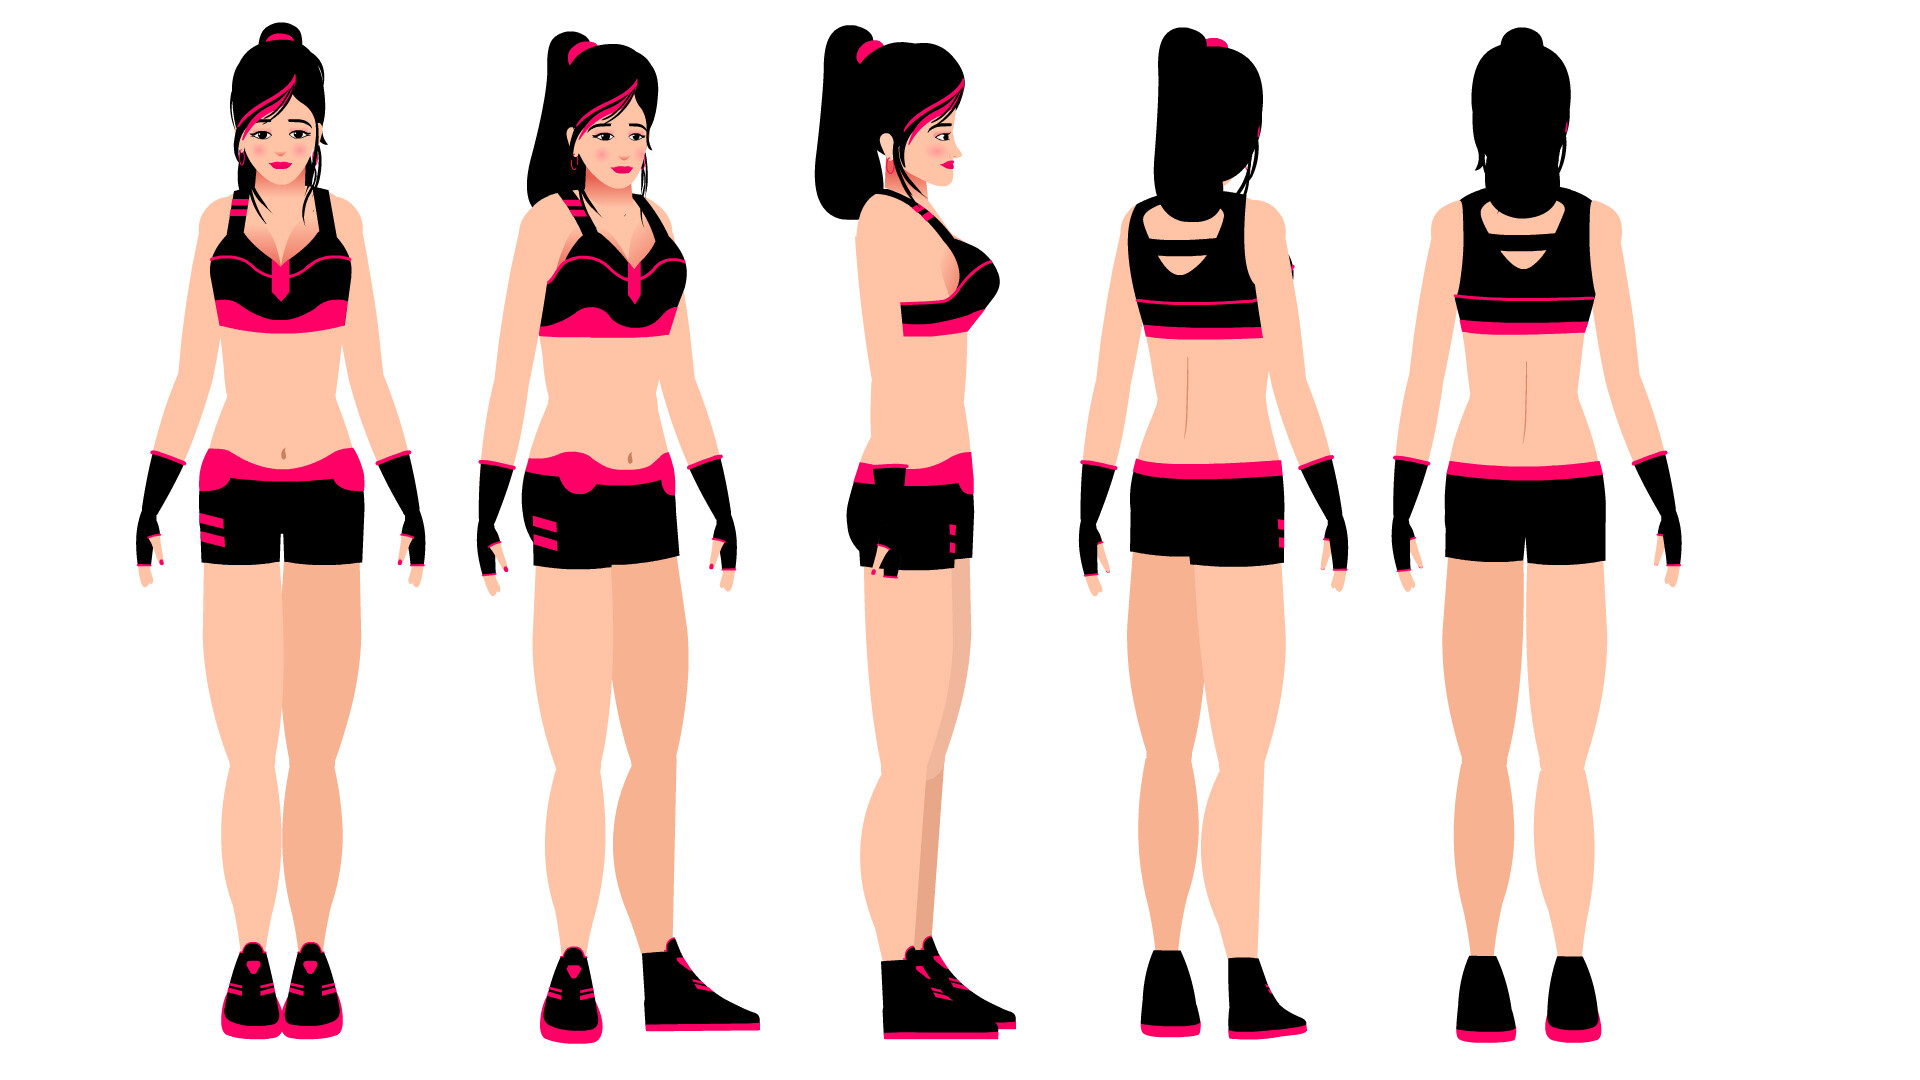 ArtStation - female fitness model 2D animation character design